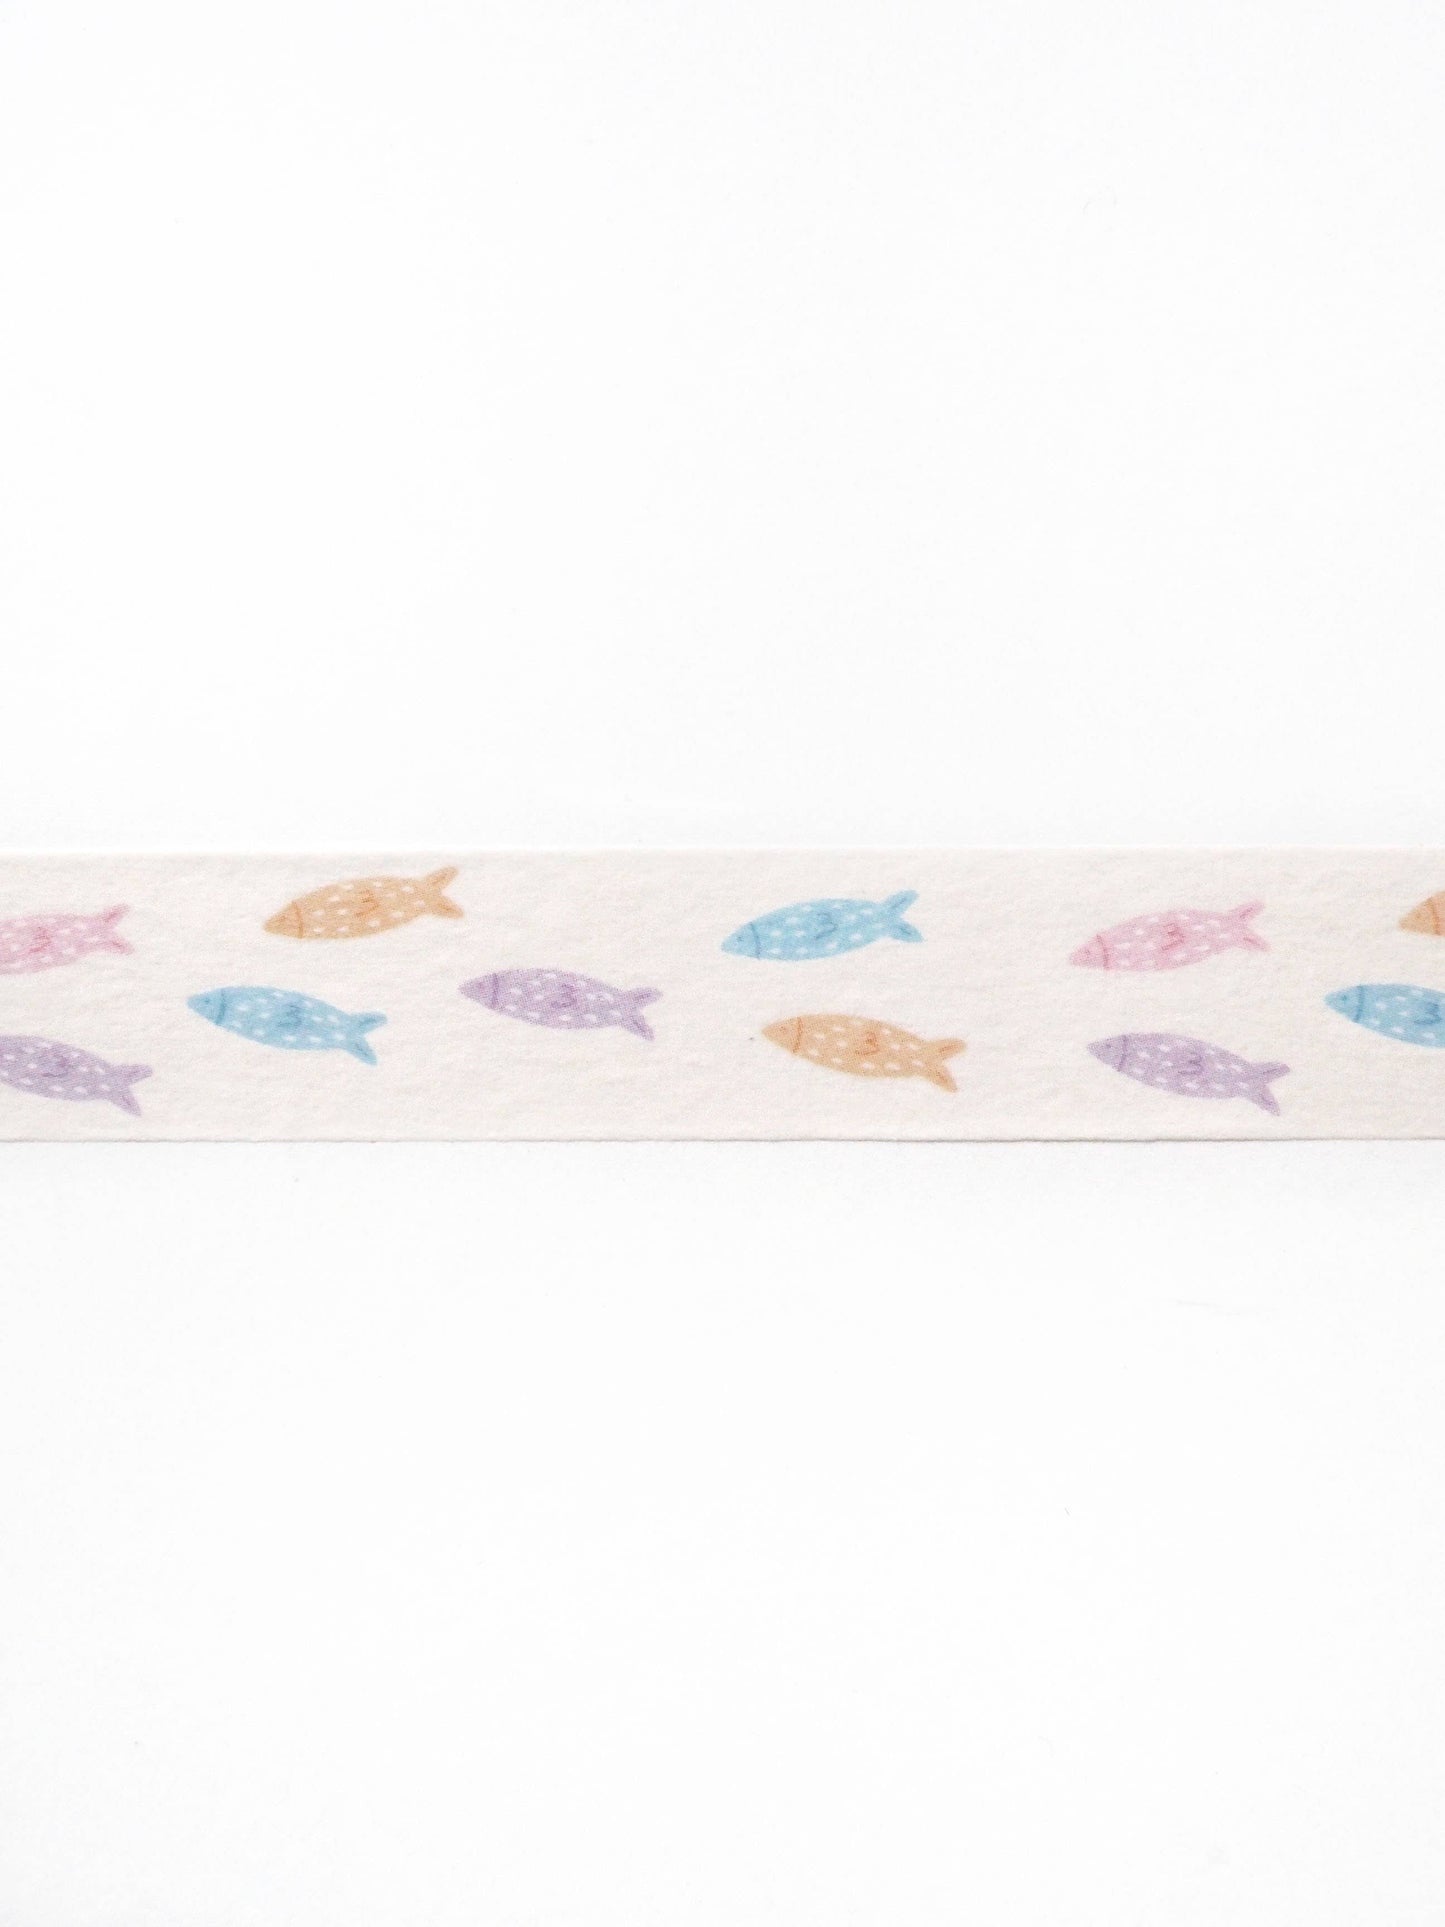 School of Fish Washi Tape